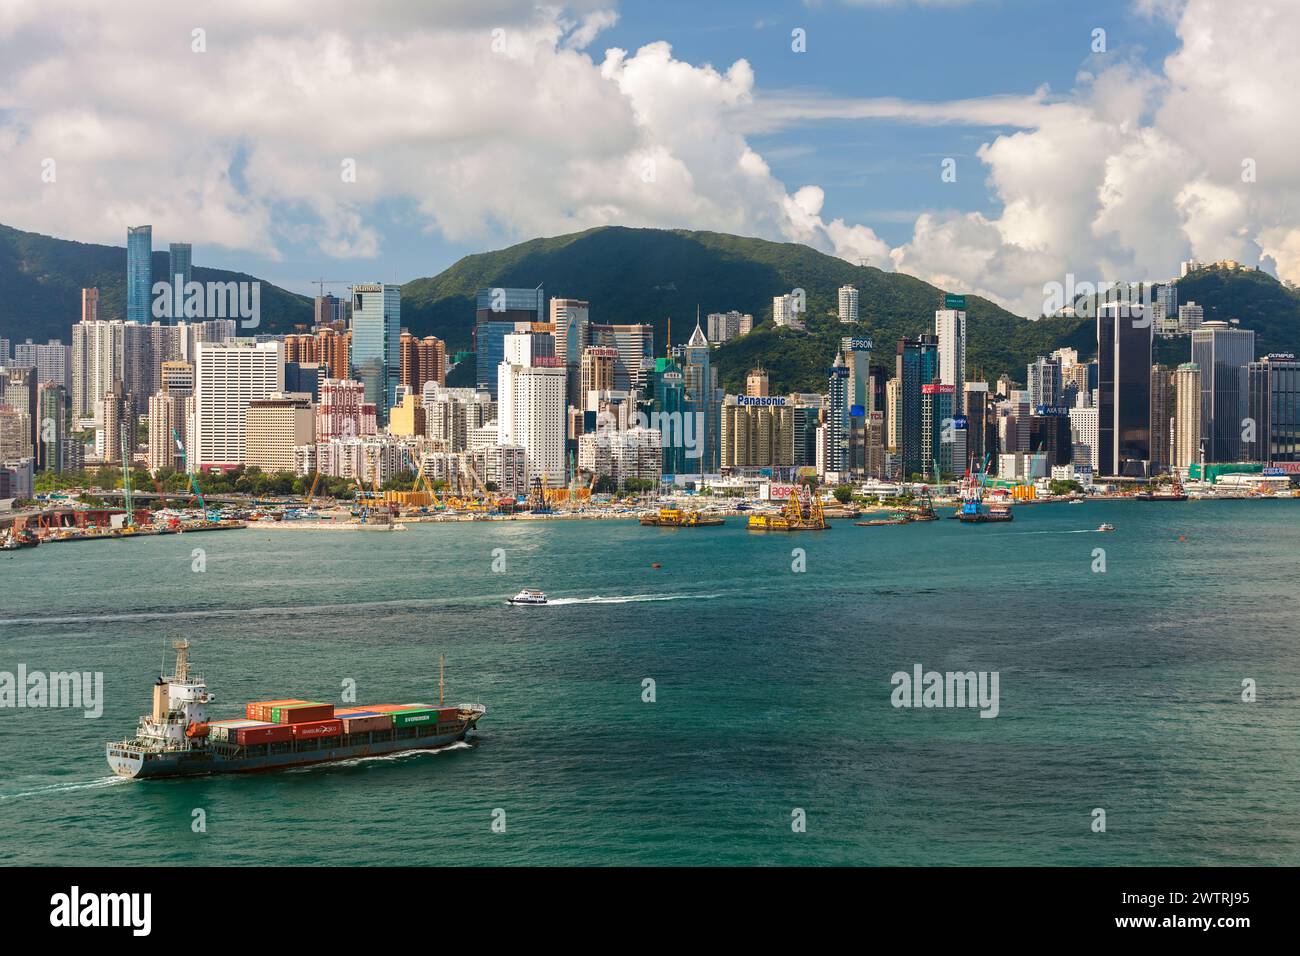 HONGKONG - 3. Juni 2015: Luftaufnahme eines Containerschiffs vor der Skyline des Victoria Harbour von Hongkong, 3. Juni 2015, Hongkong, China. Stockfoto